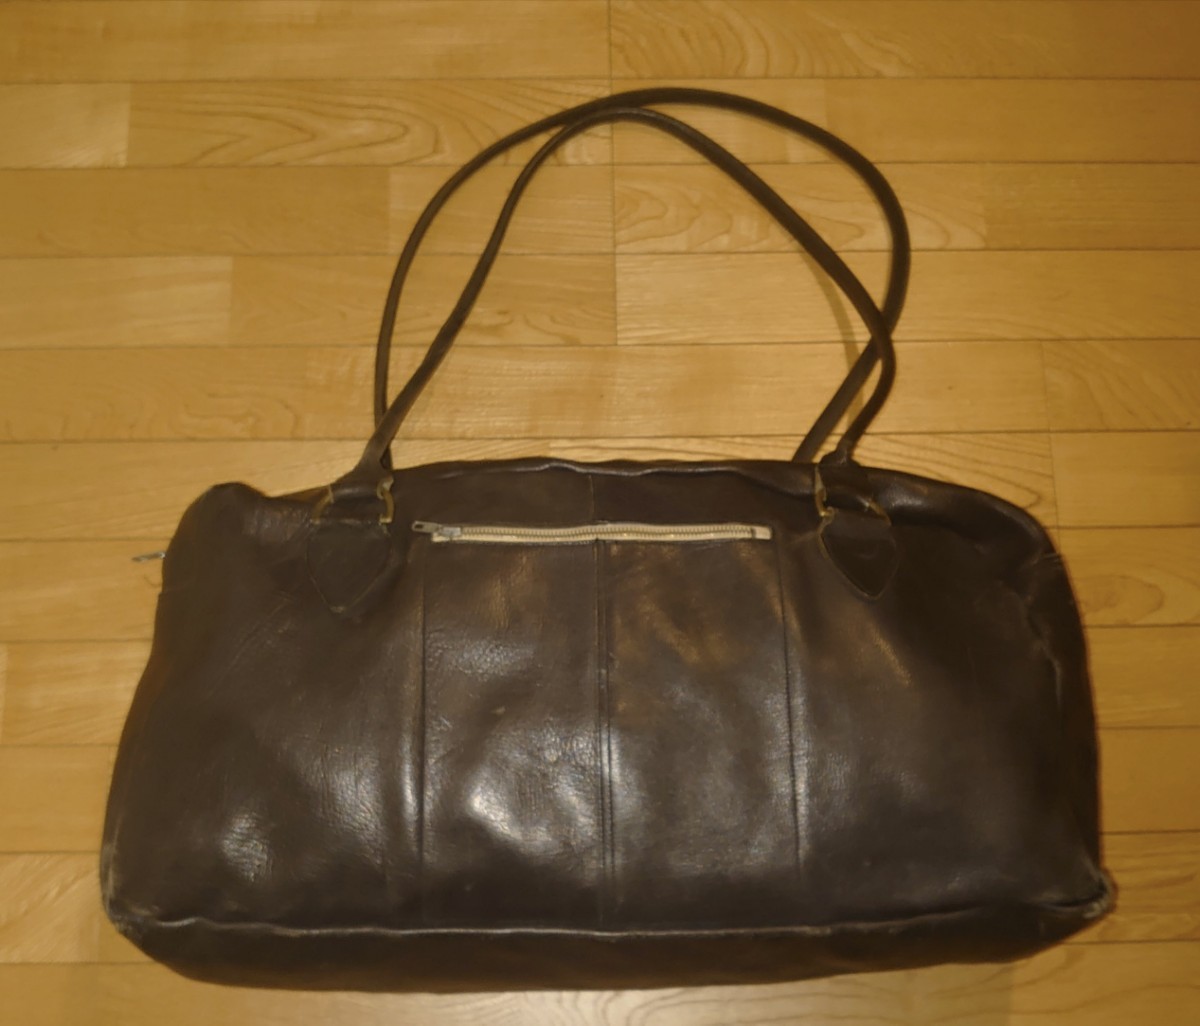 Paul Harnden 初期 ビッグスポーツバッグ 黒 ブラック レザー ボストンバッグ Made in England 鞄 バッグ 582817cm